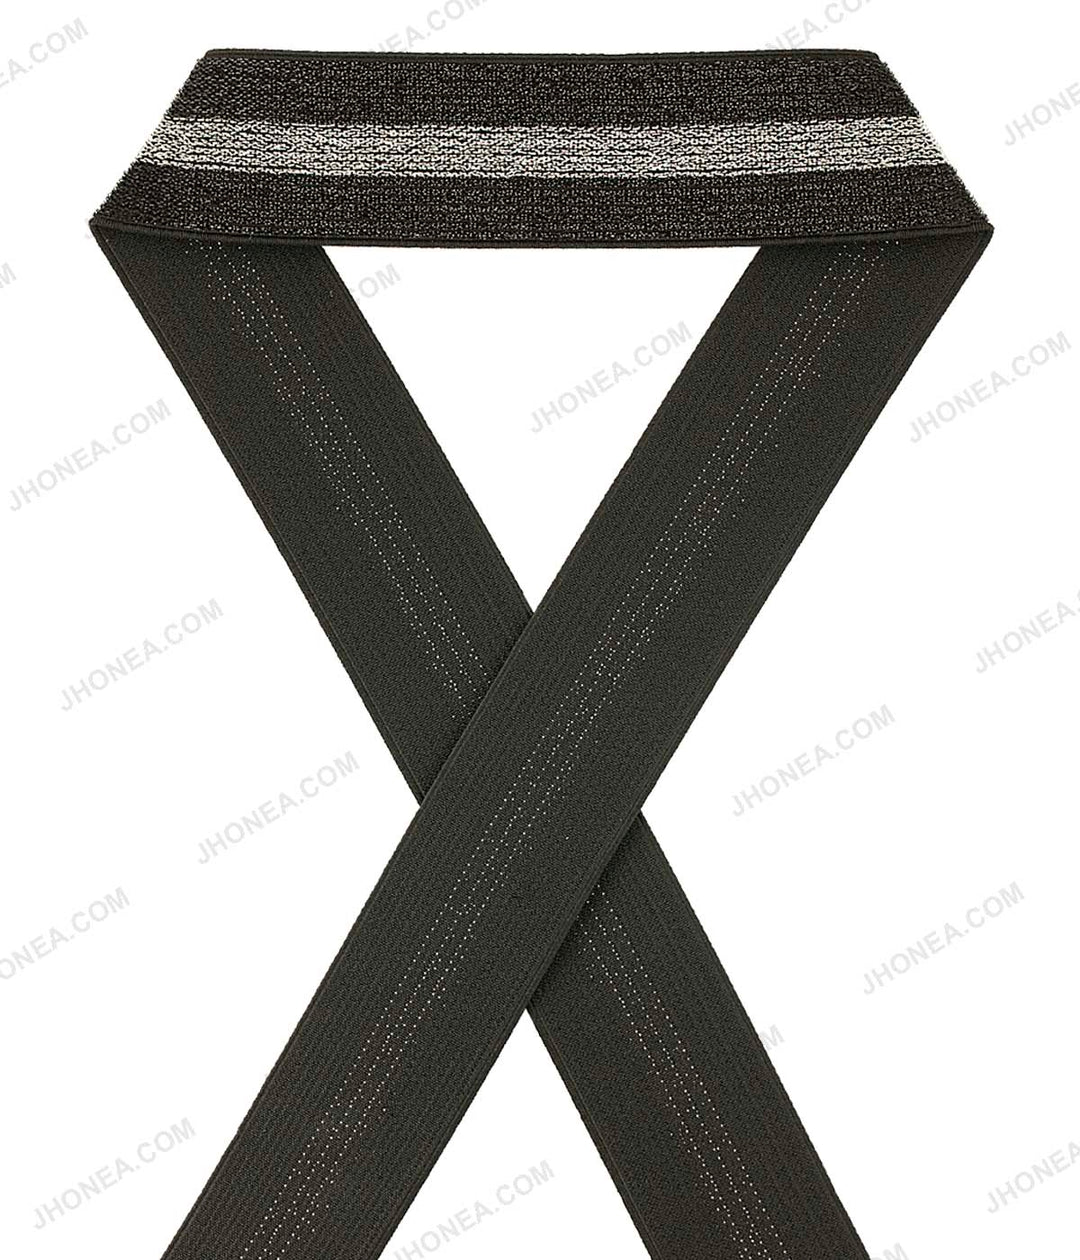 Shiny Metallic 1.5inch wide Fancy Lurex Knit Elastic for Party Wear